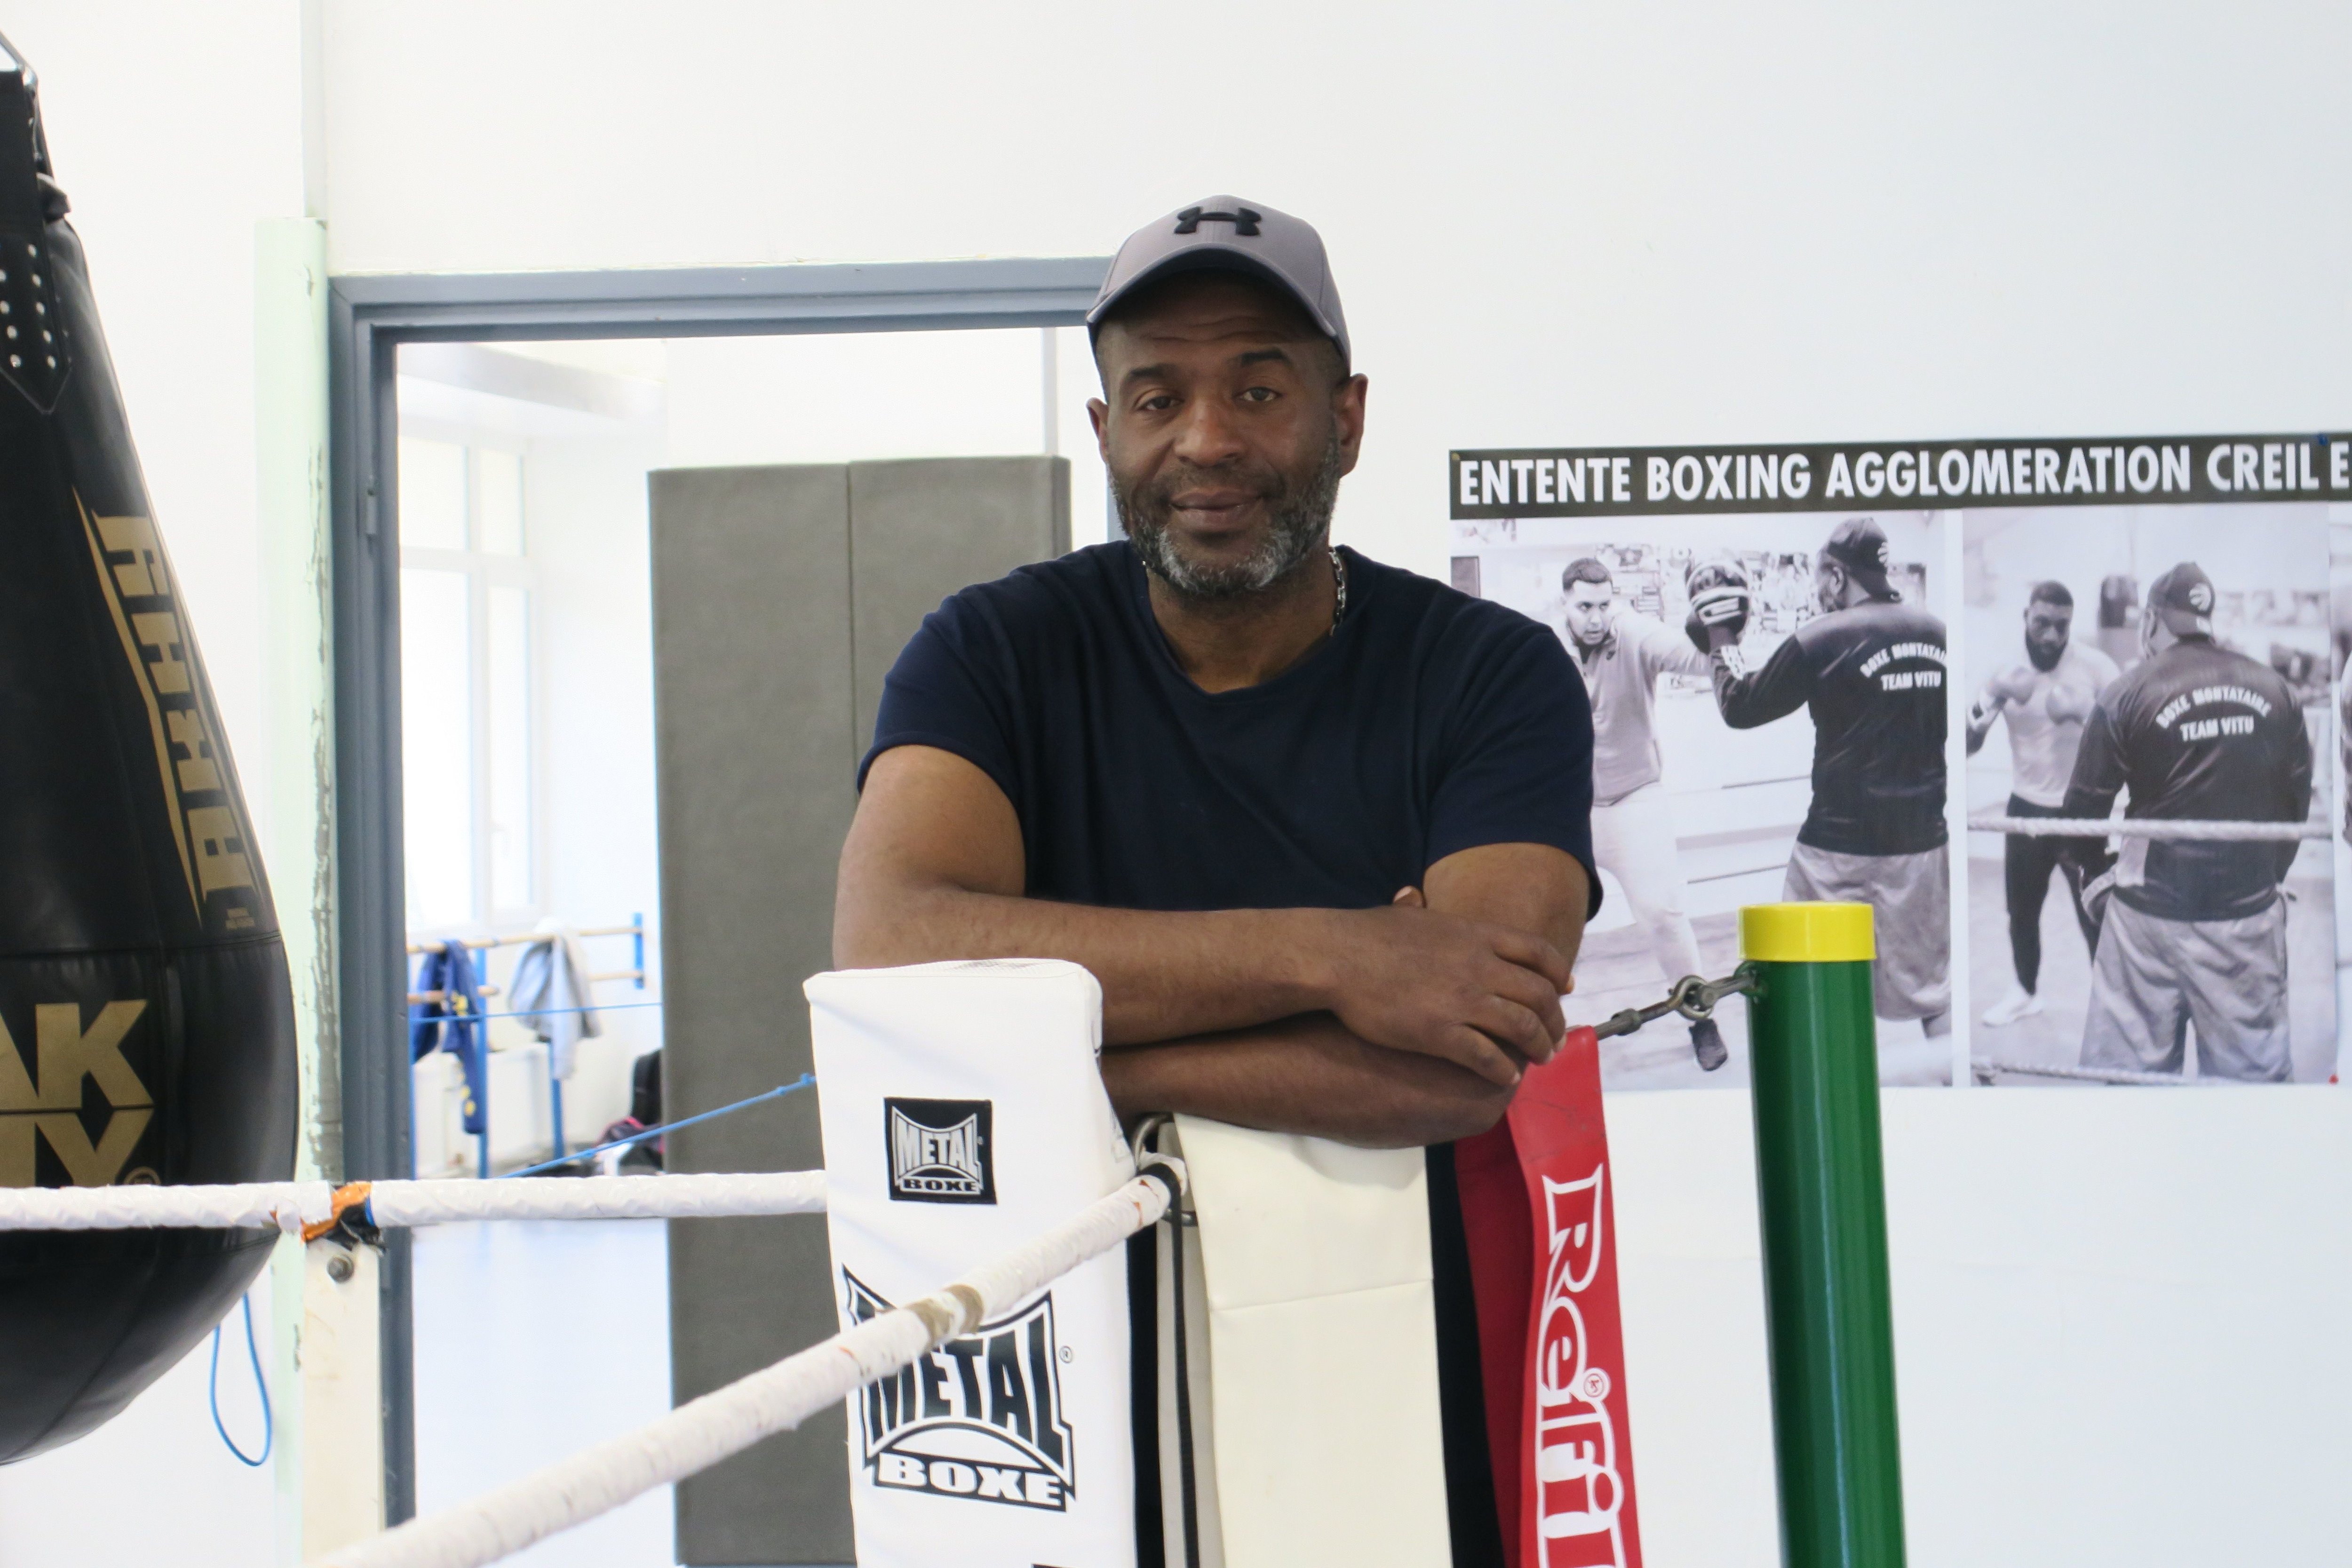 Champion de boxe anglaise, Frédéric Birot veut lancer un club de MMA dans le quartier des Cavées, à Creil. Ici dans la salle de boxe de Jean-Christophe Vitu à Montataire. LP/Simon Gourru